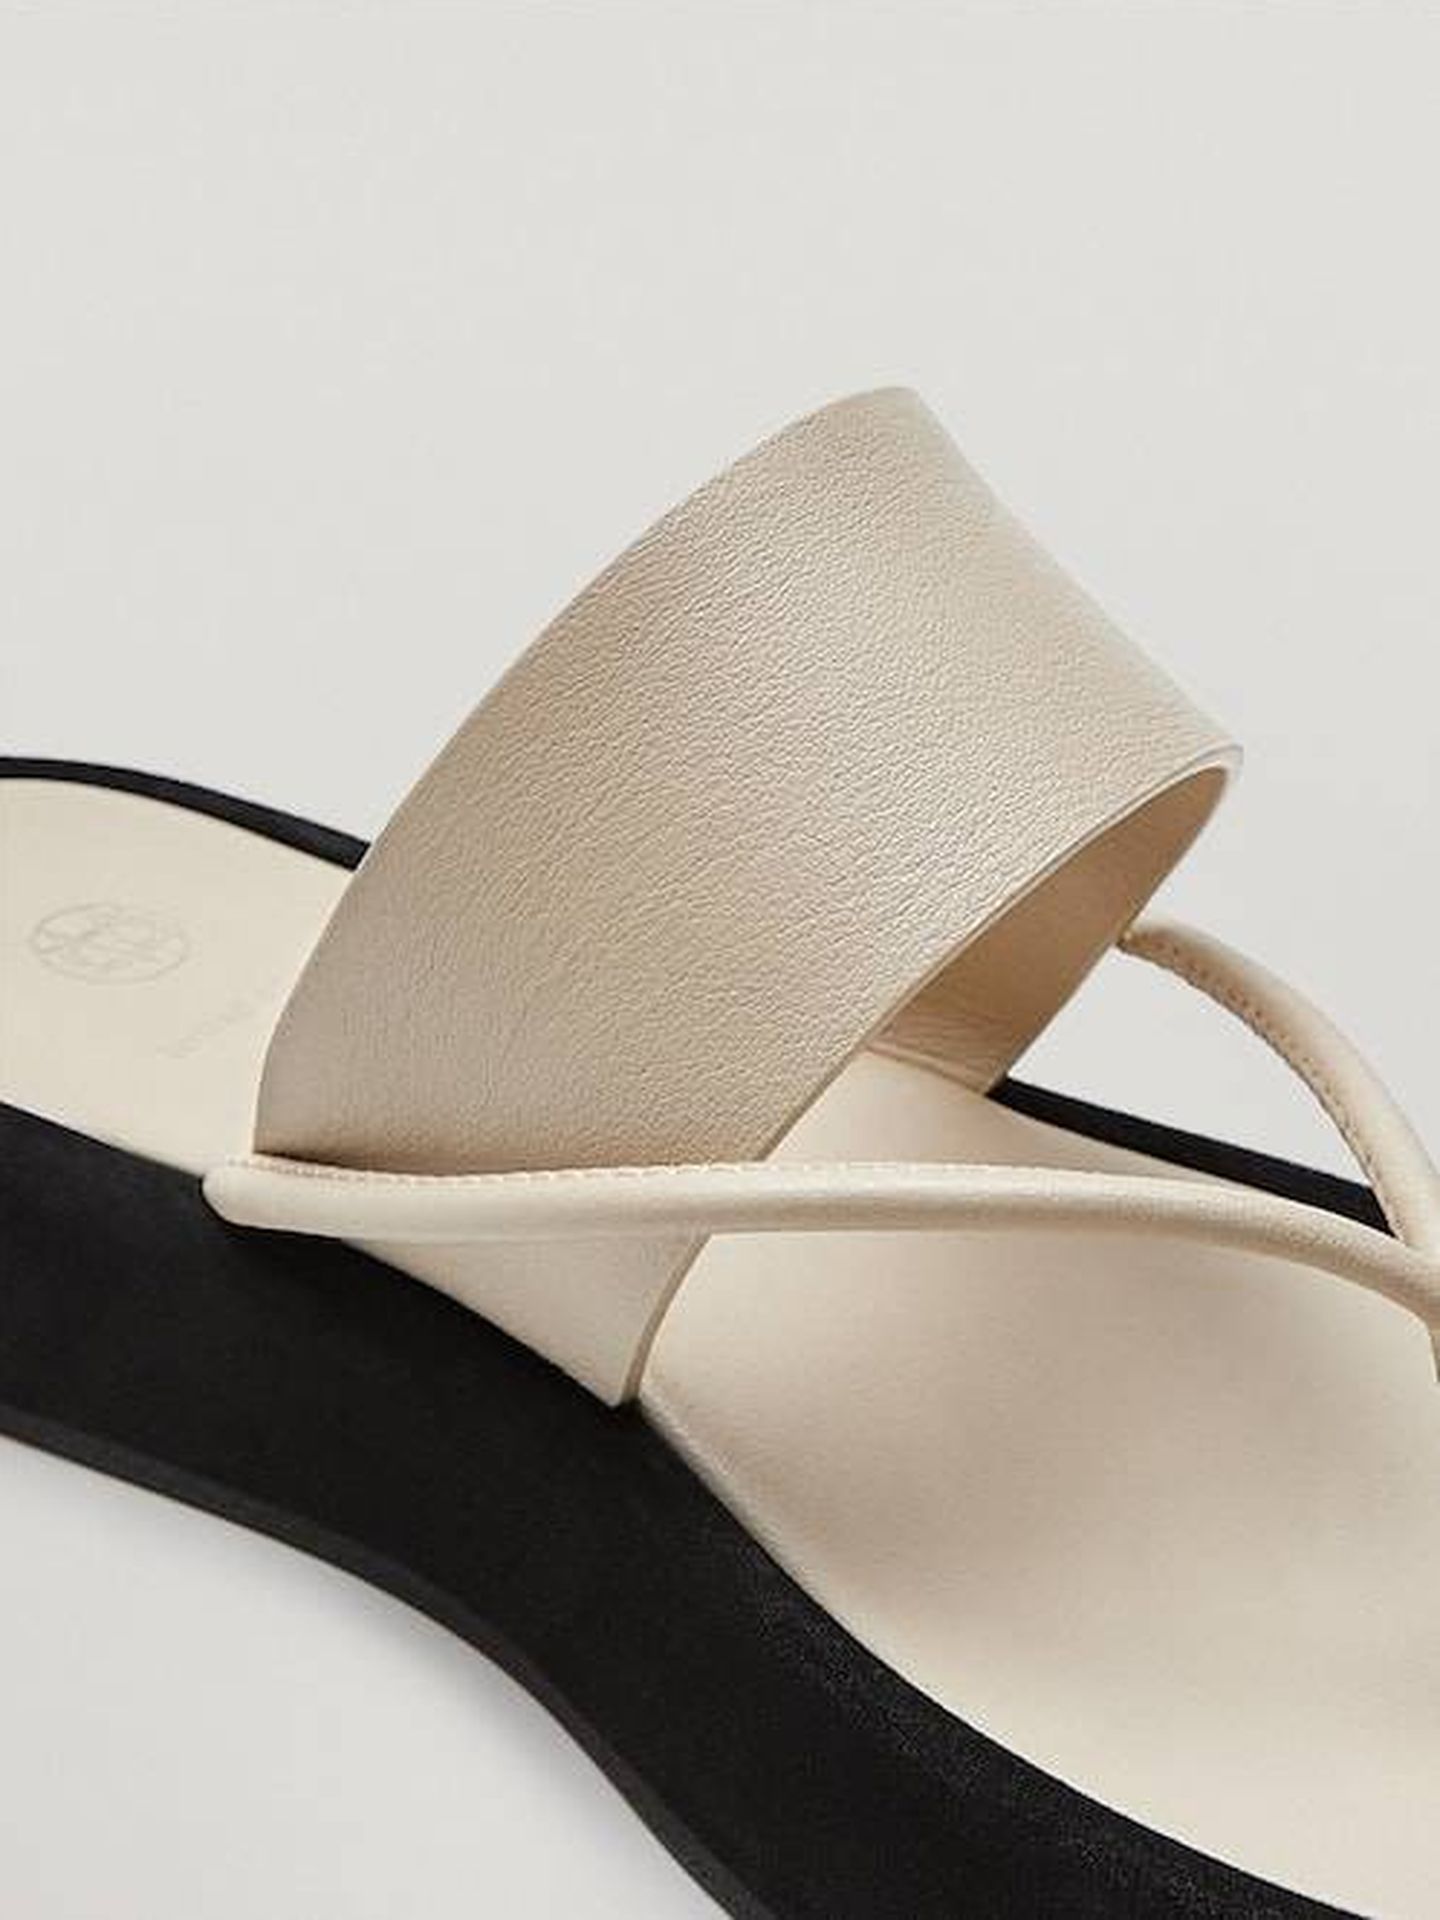 Las sandalias de Massimo Dutti. (Cortesía)